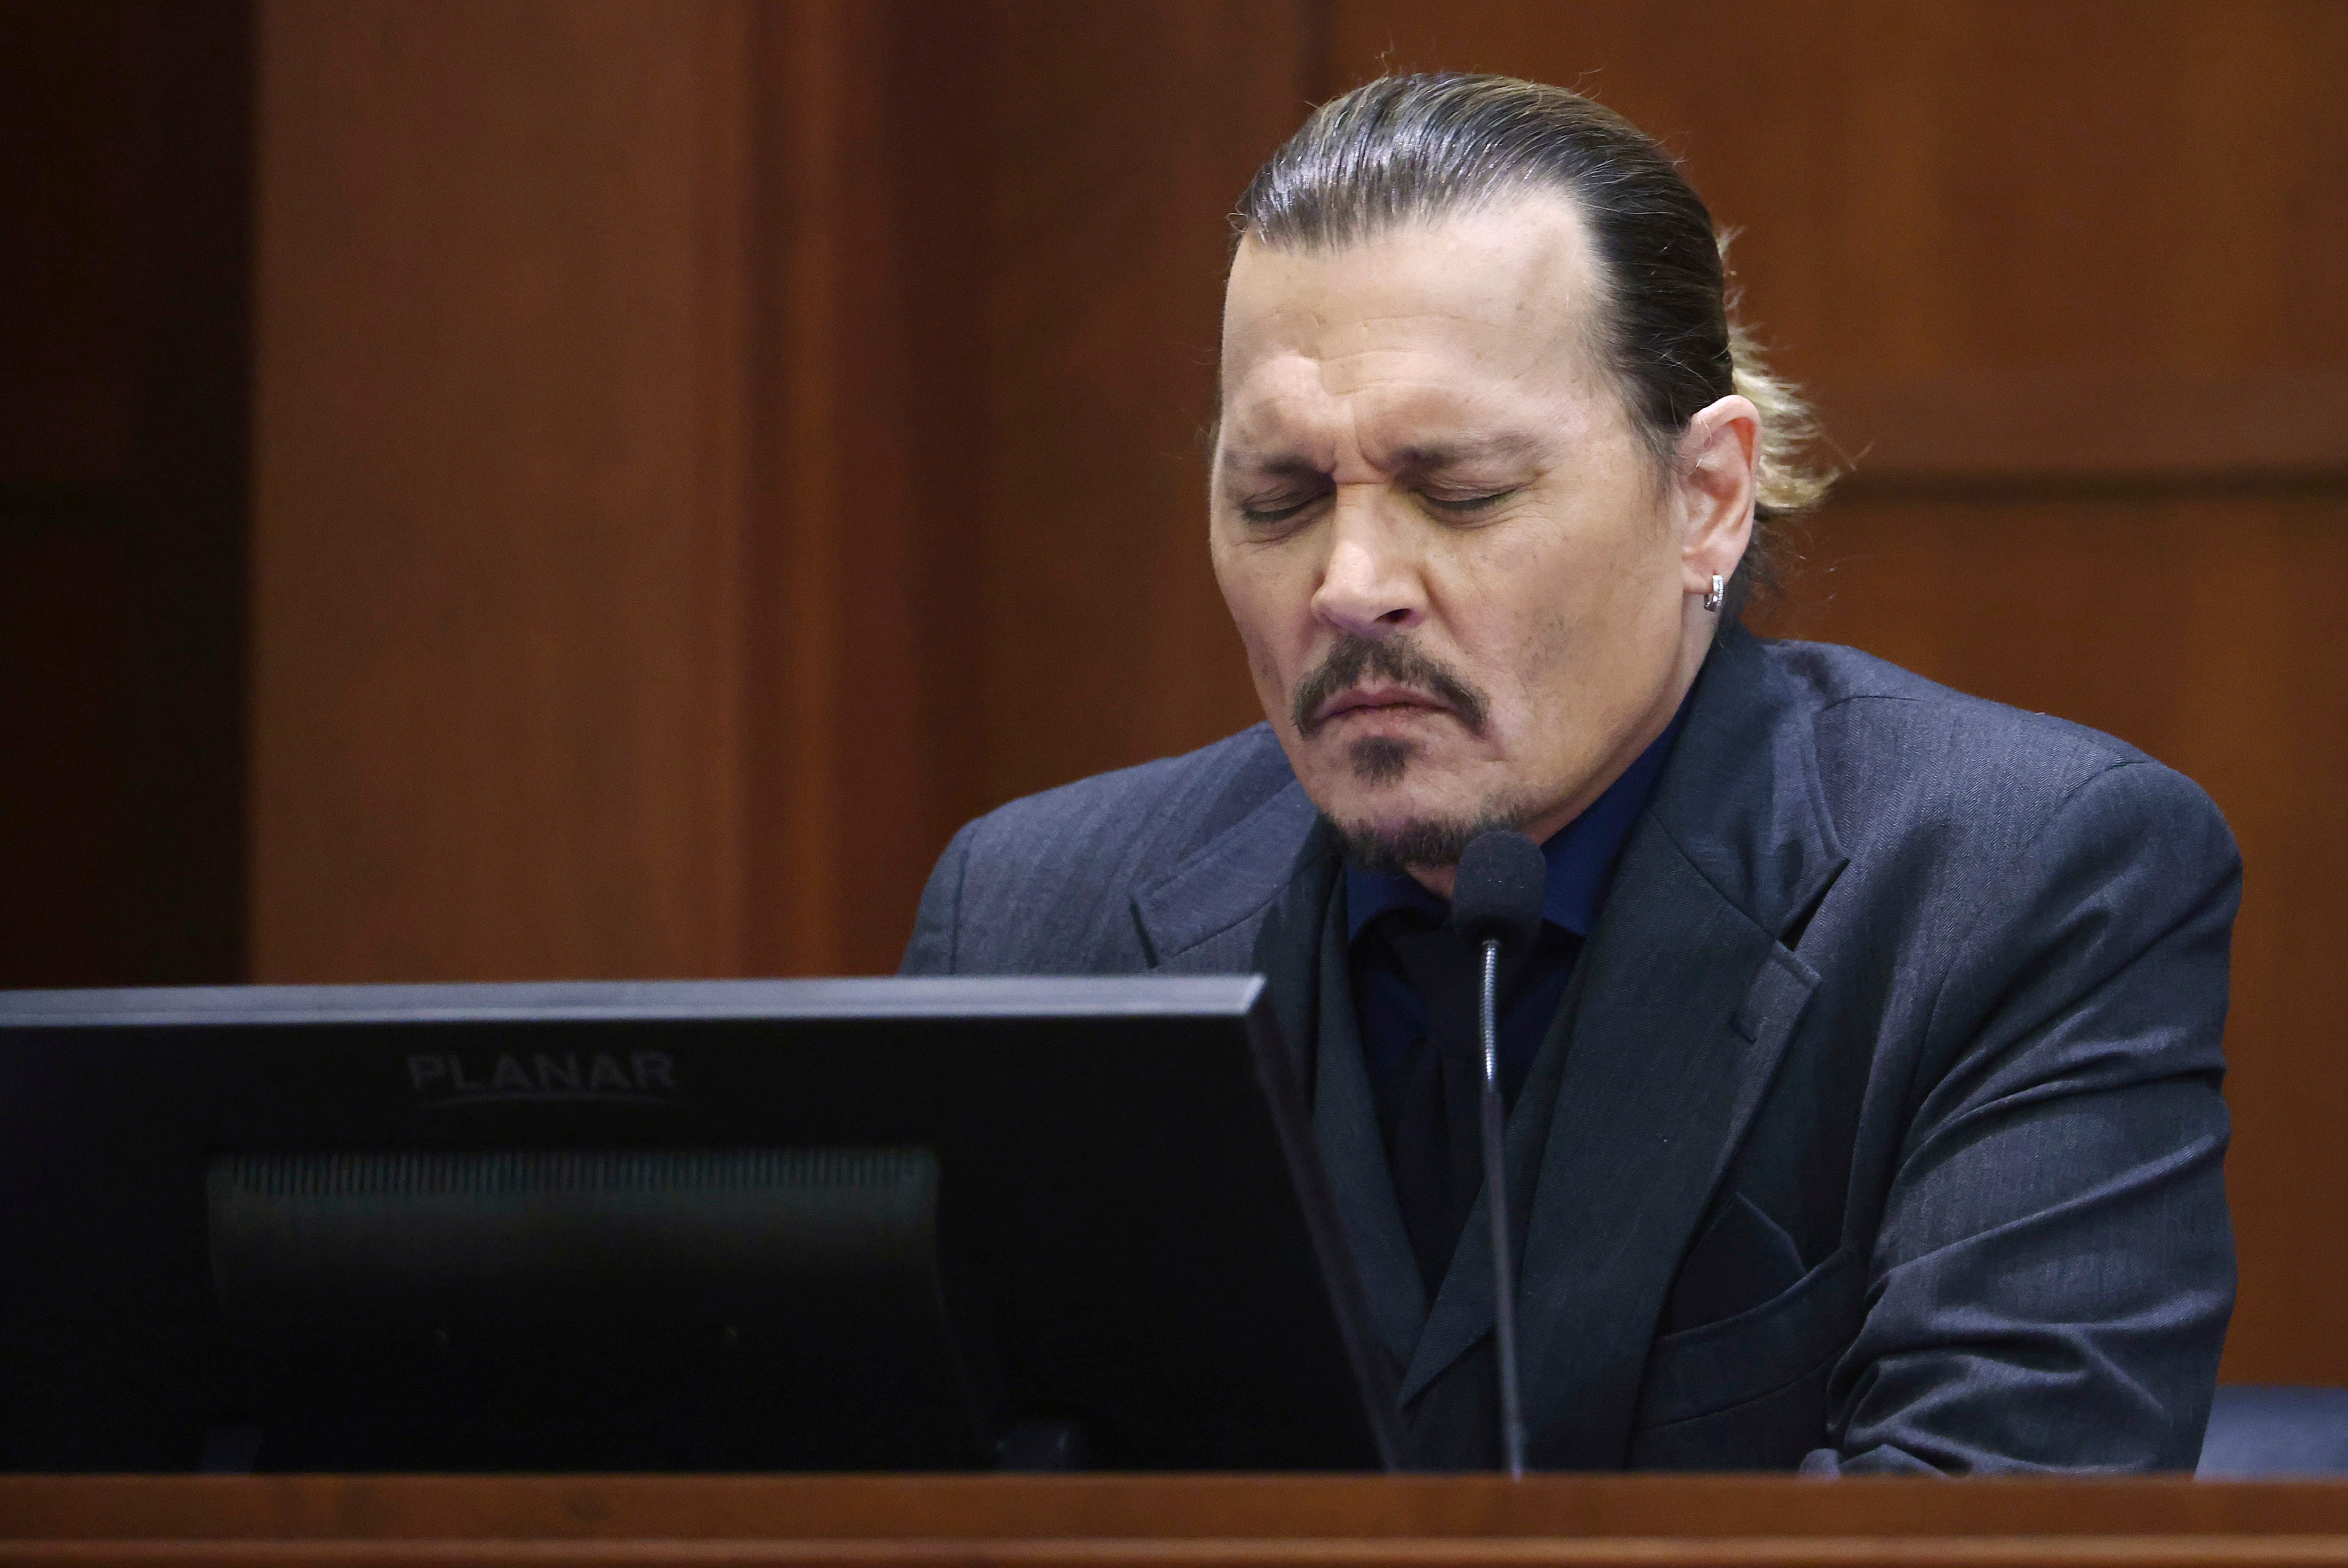 La segunda semana del juicio por difamación de Johnny Depp contra su exesposa Amber Heard concluyó con la proyección a los miembros del jurado de vídeos y audios de los supuestos episodios violentos del actor (Jim Lo Scalzo/Pool/AP)